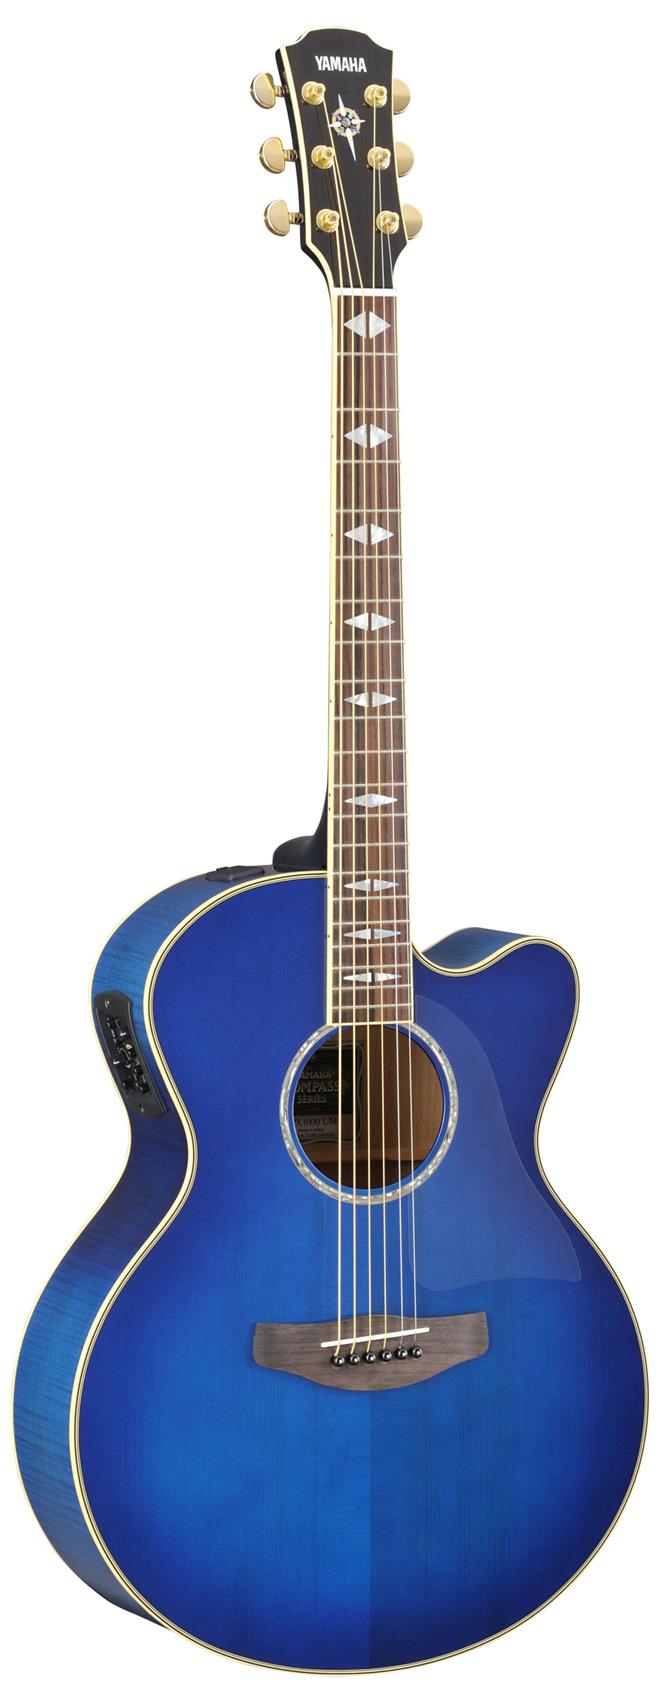 Yamaha CPX1000 UM elektro-akustična kitara